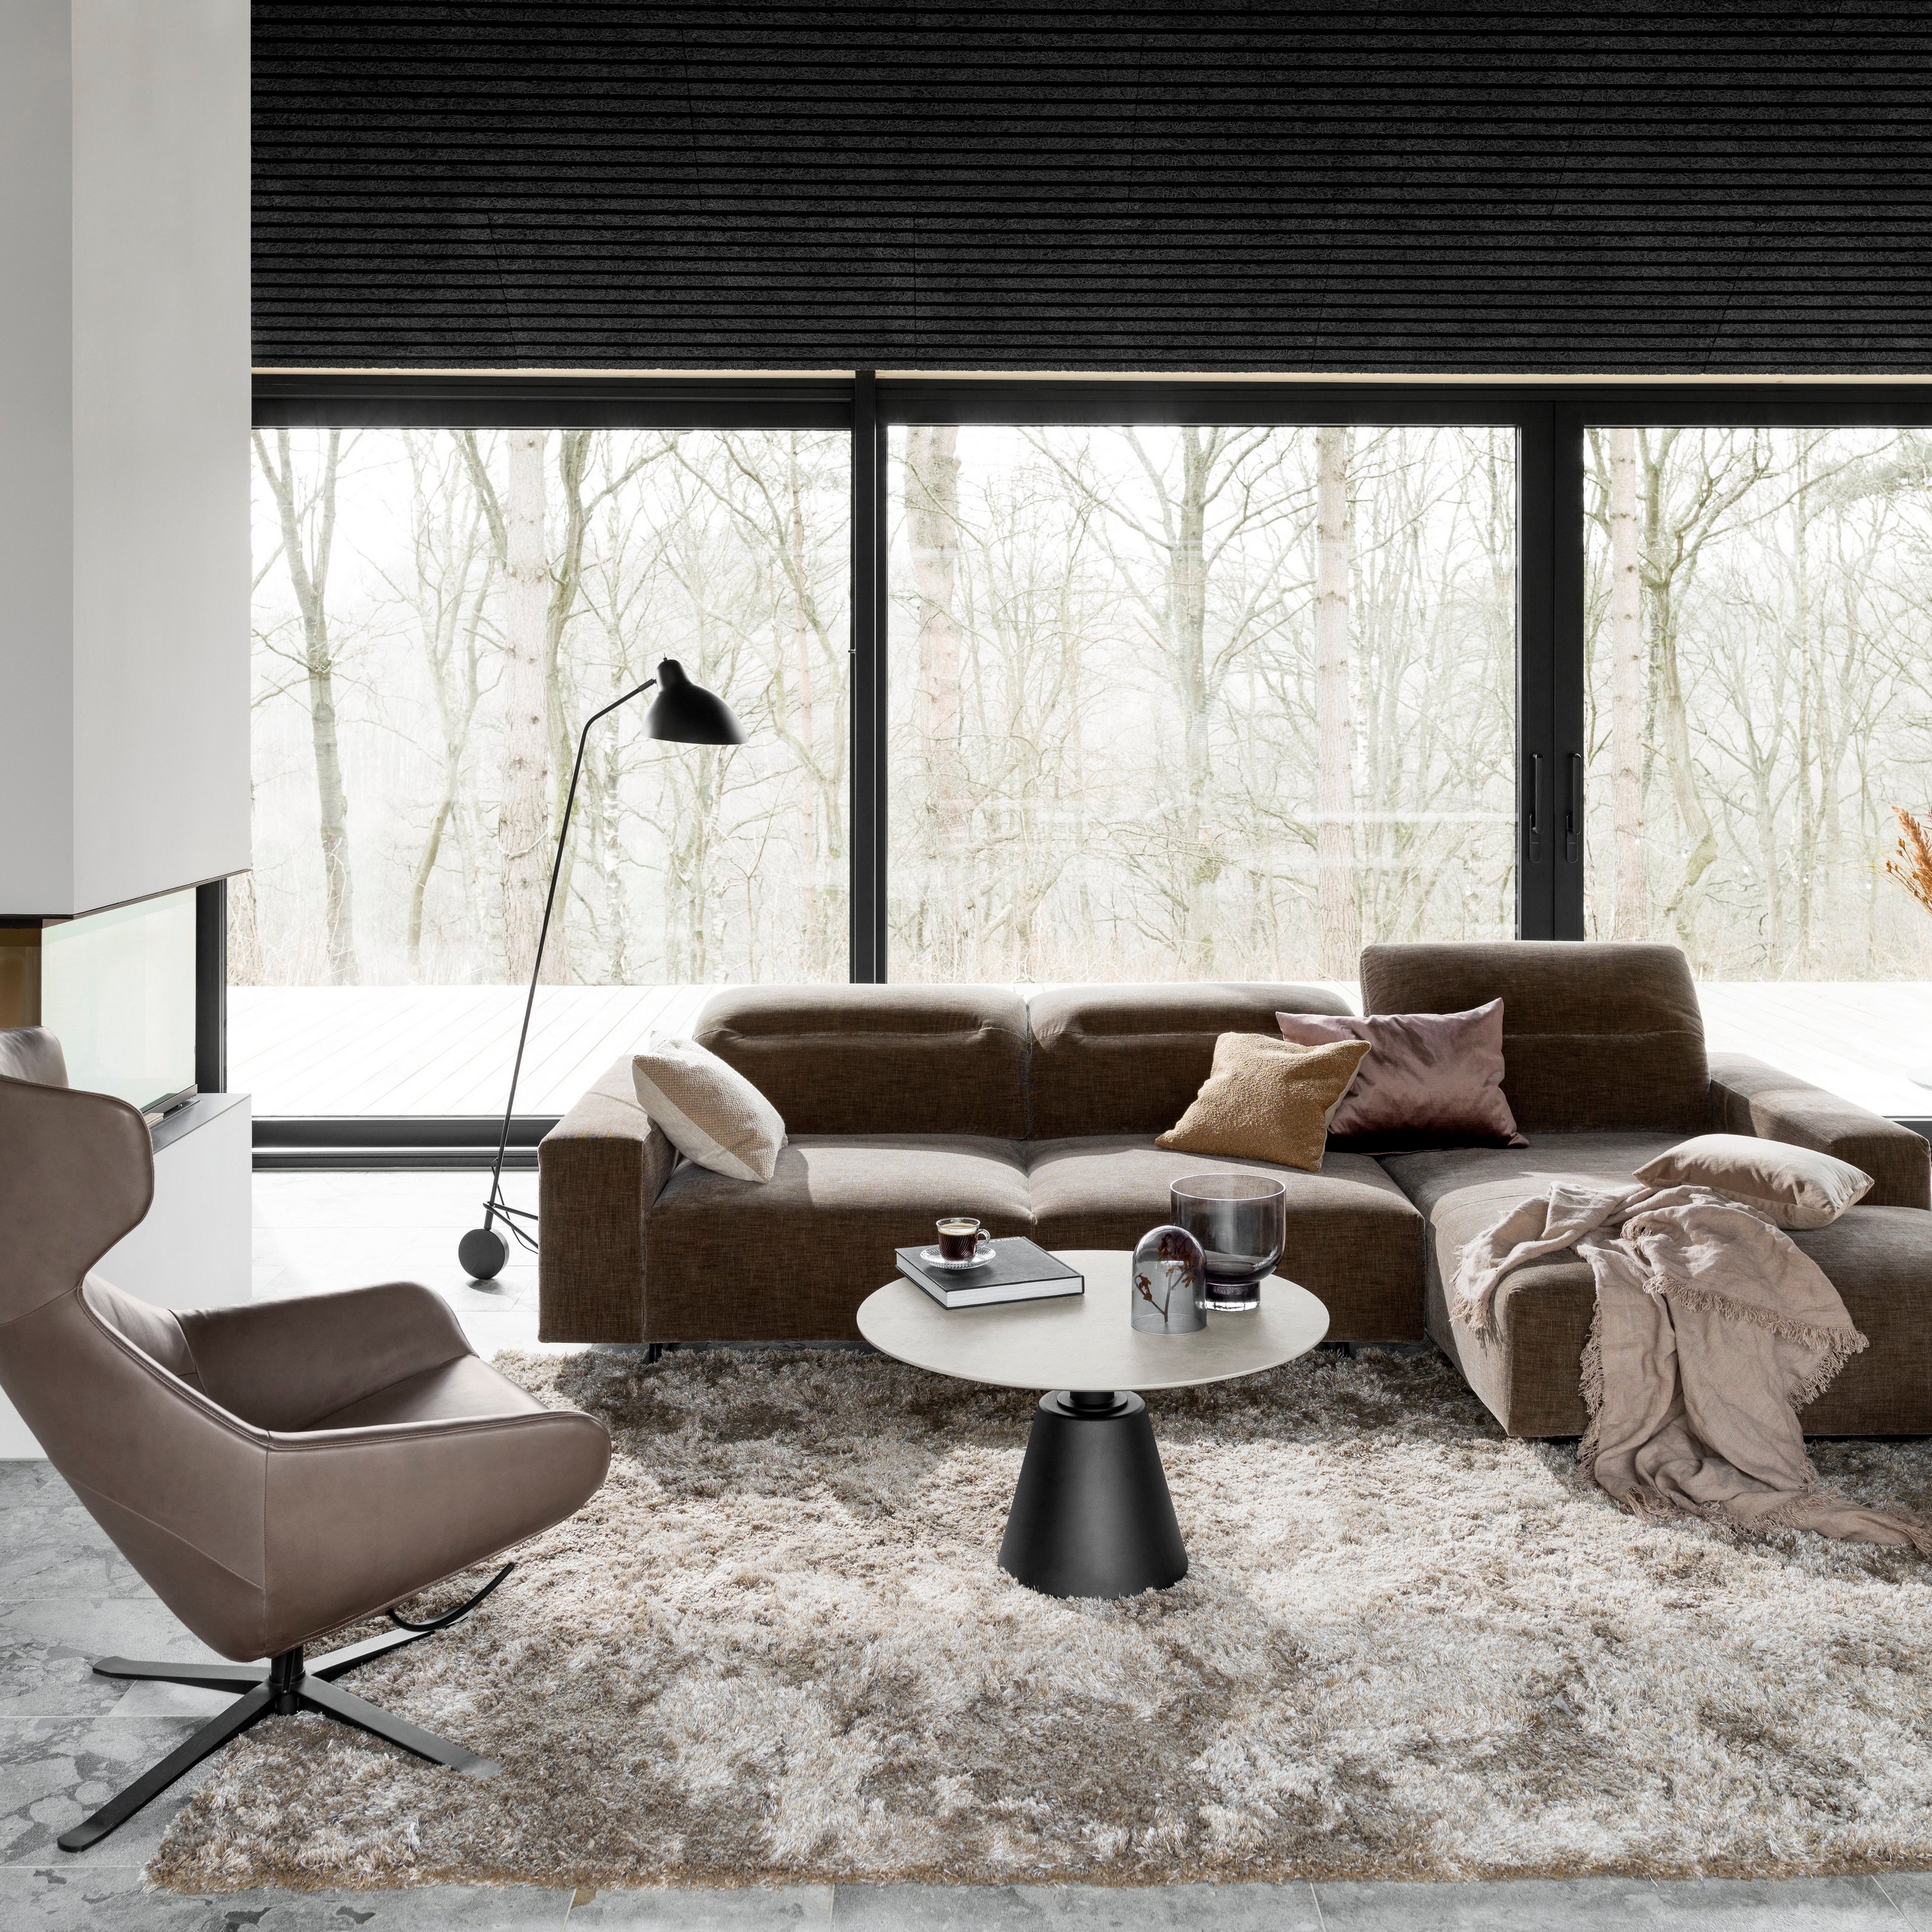 Moderne woonkamer met bruine sectionale zitbank, grijs karpet en zwarte vloerlamp bij het raam.